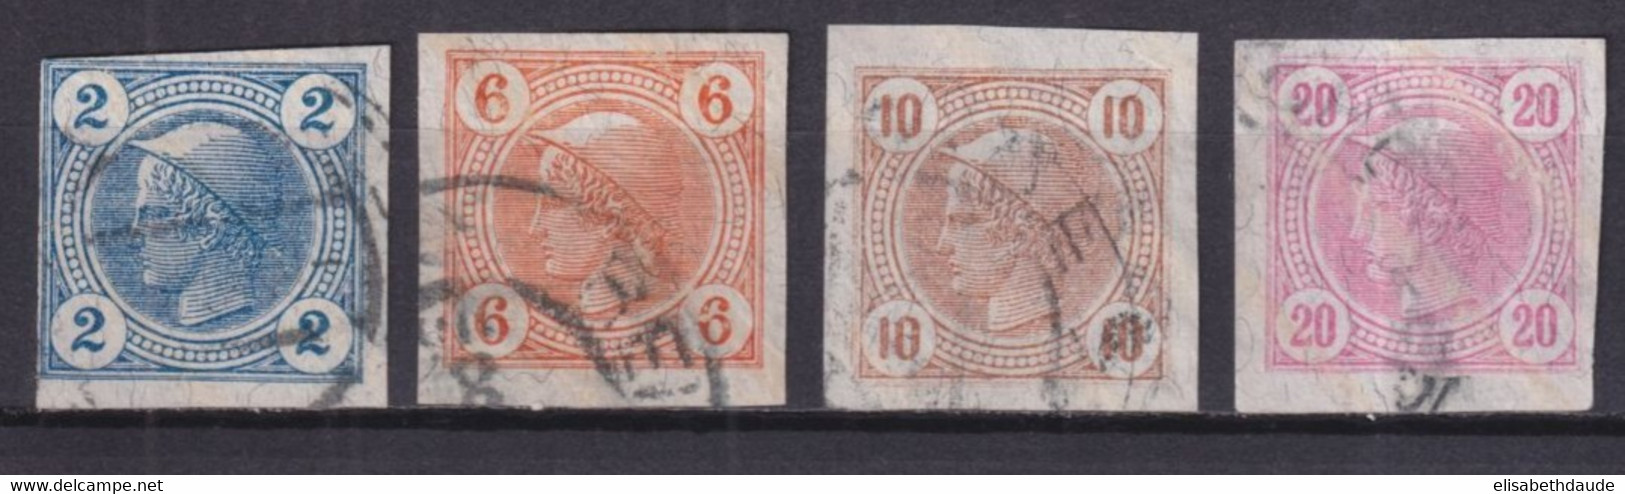 AUTRICHE - 1899 - JOURNAUX YVERT N°12a/15a LIGNES OBLIQUES ! OBLITERES - COTE = 100 EUR - Usados